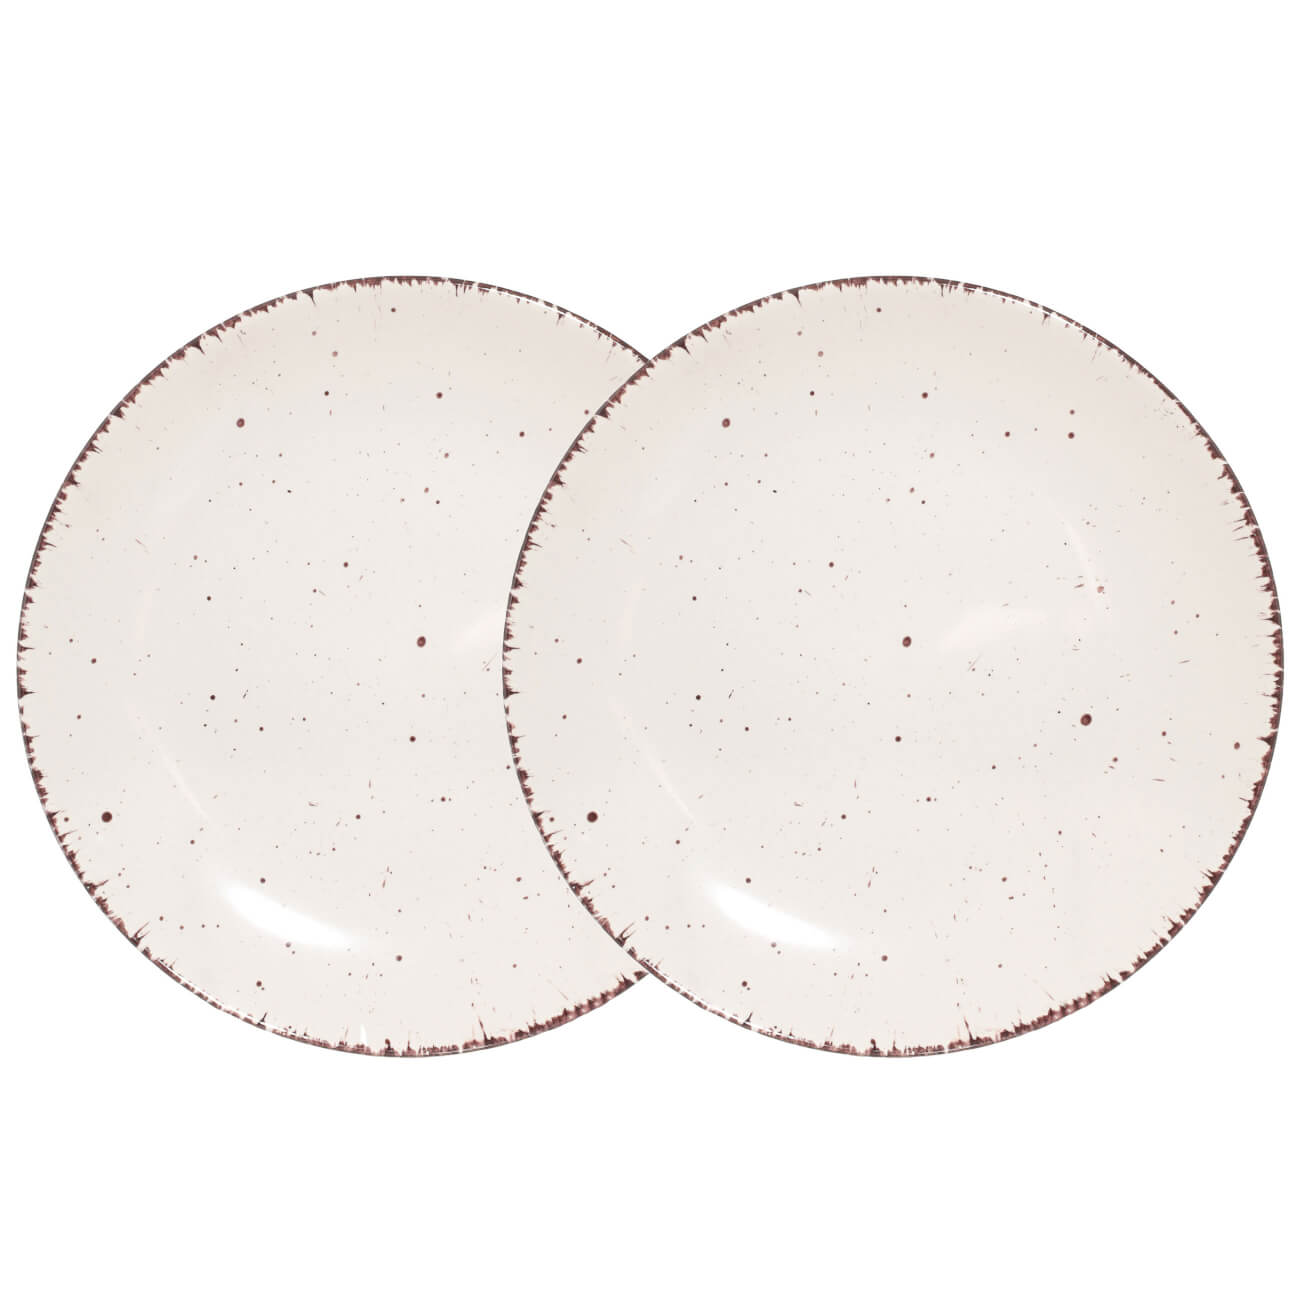 Тарелка закусочная, 21 см, 2 шт, керамика, бежевая, в крапинку, Speckled тарелка закусочная certified international песня природы купальница 23 см